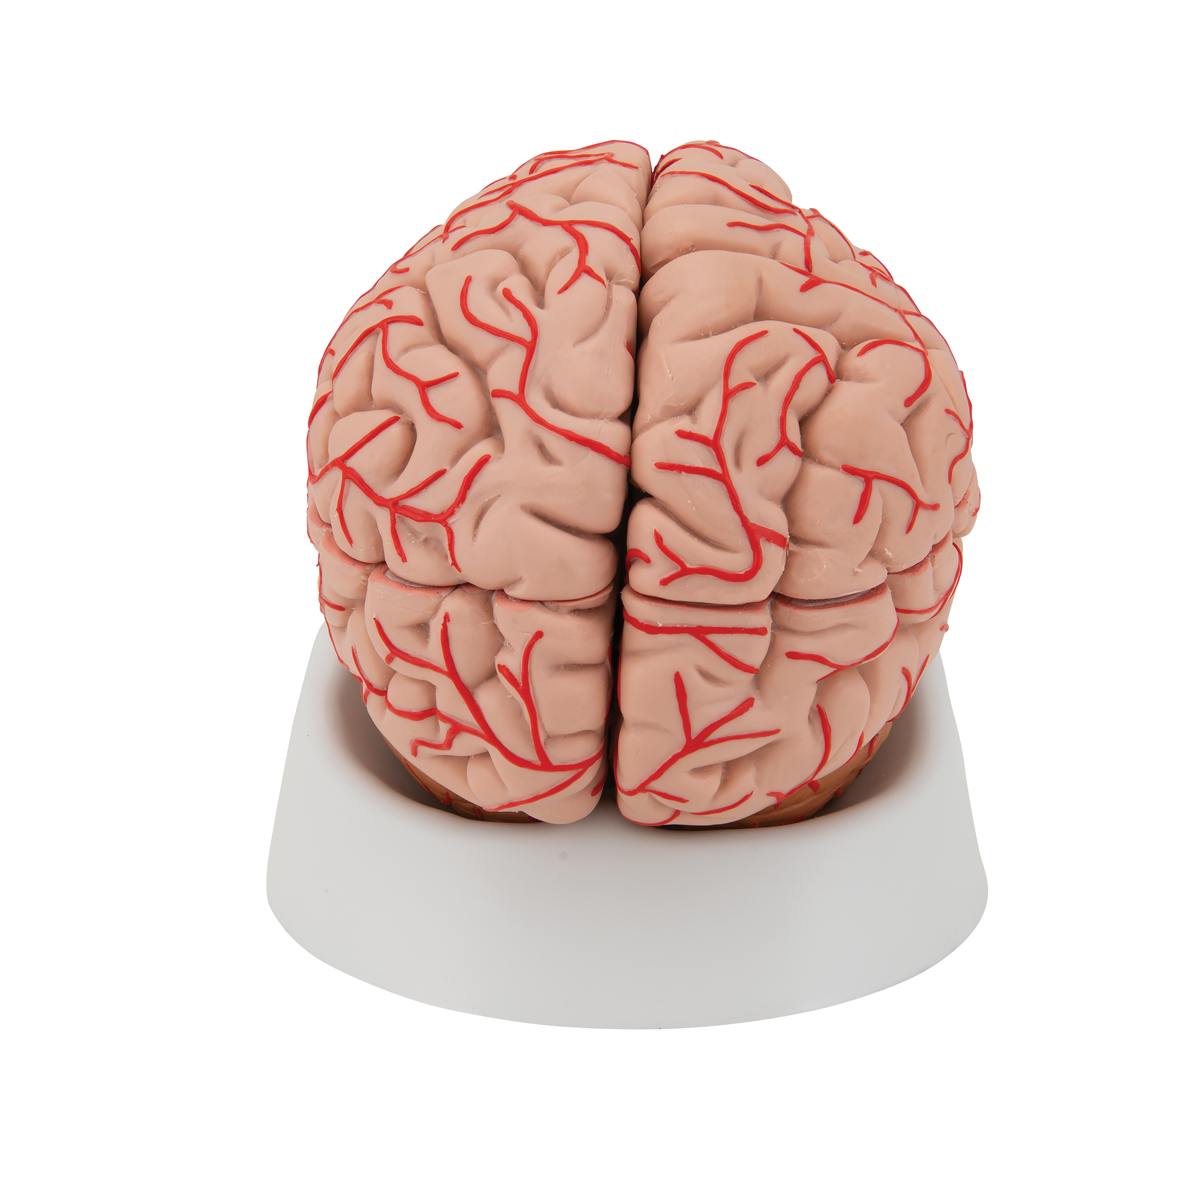 Мозг купить спб. Муляж мозга. Модель мозга. Мозг человека муляж. Муляж головного мозга человека.